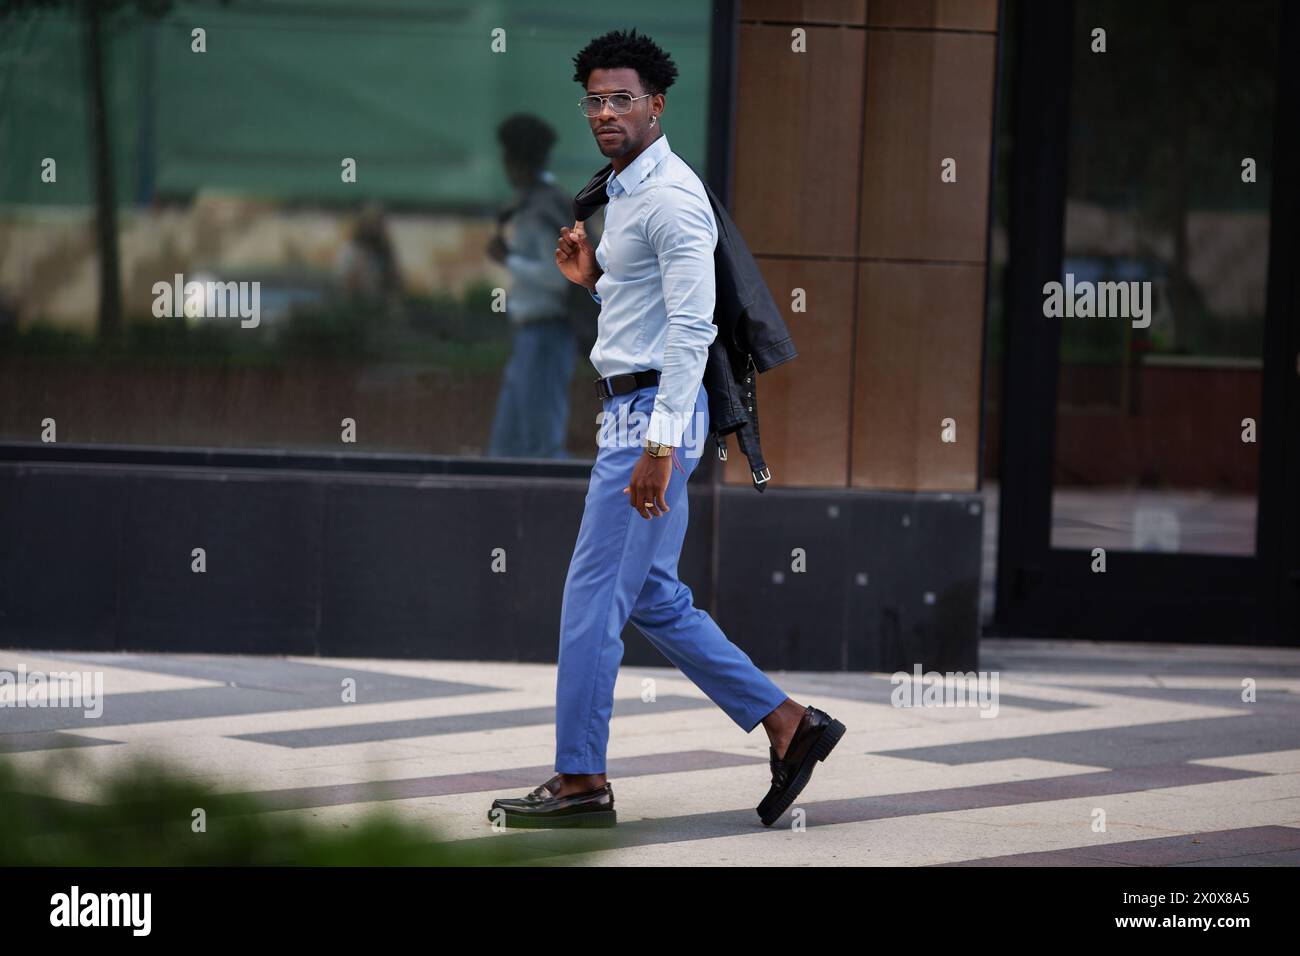 Elegante uomo afroamericano alla moda che cammina all'aperto in città, indossando pantaloni blu e una camicia con mocassini, trasuda raffinatezza urbana. Foto Stock